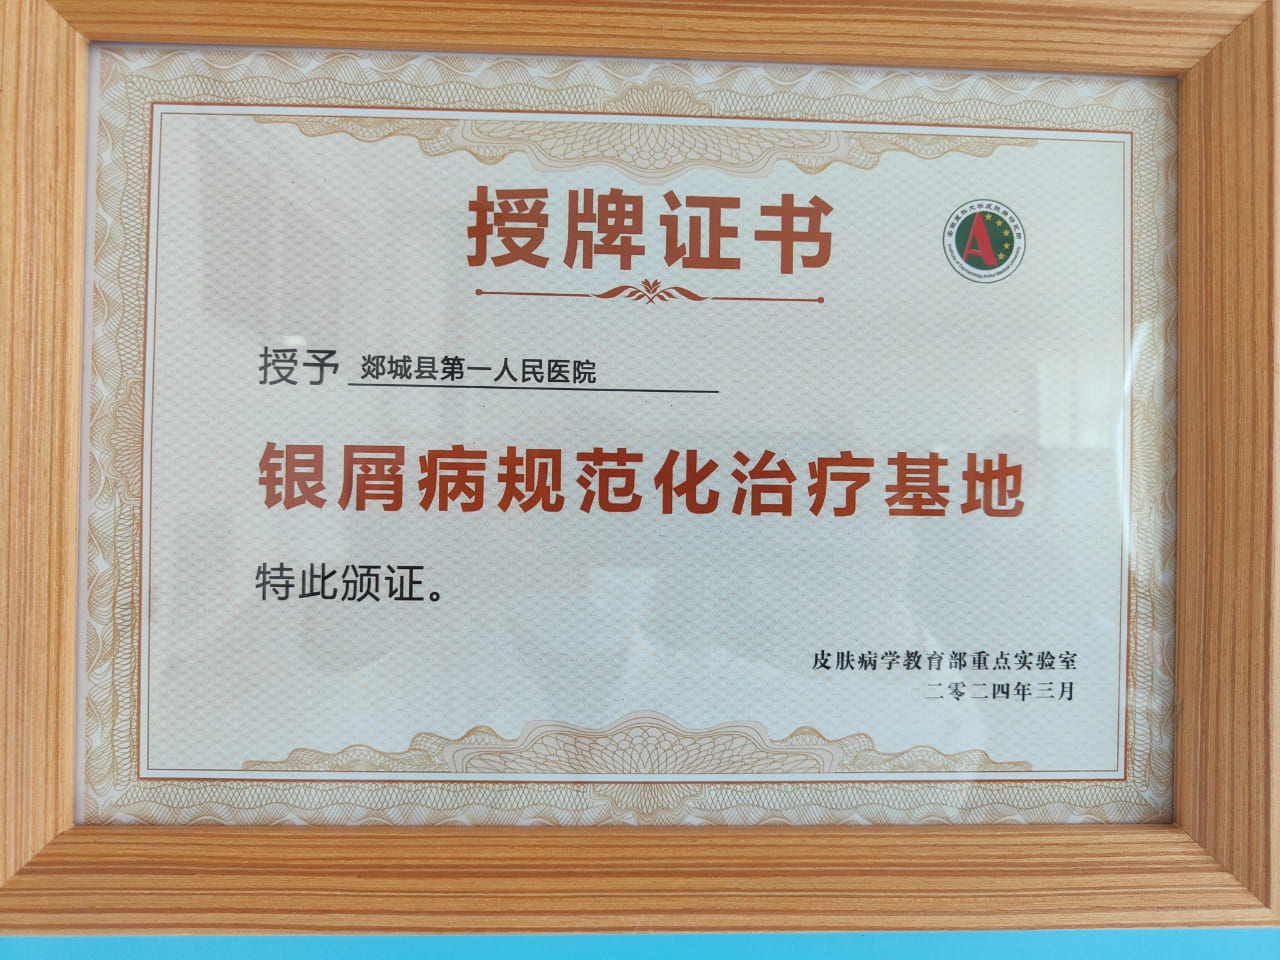 郯城县第一人民医院获得“皮肤病学教育部重点实验室银屑病规范化治疗基地”授牌